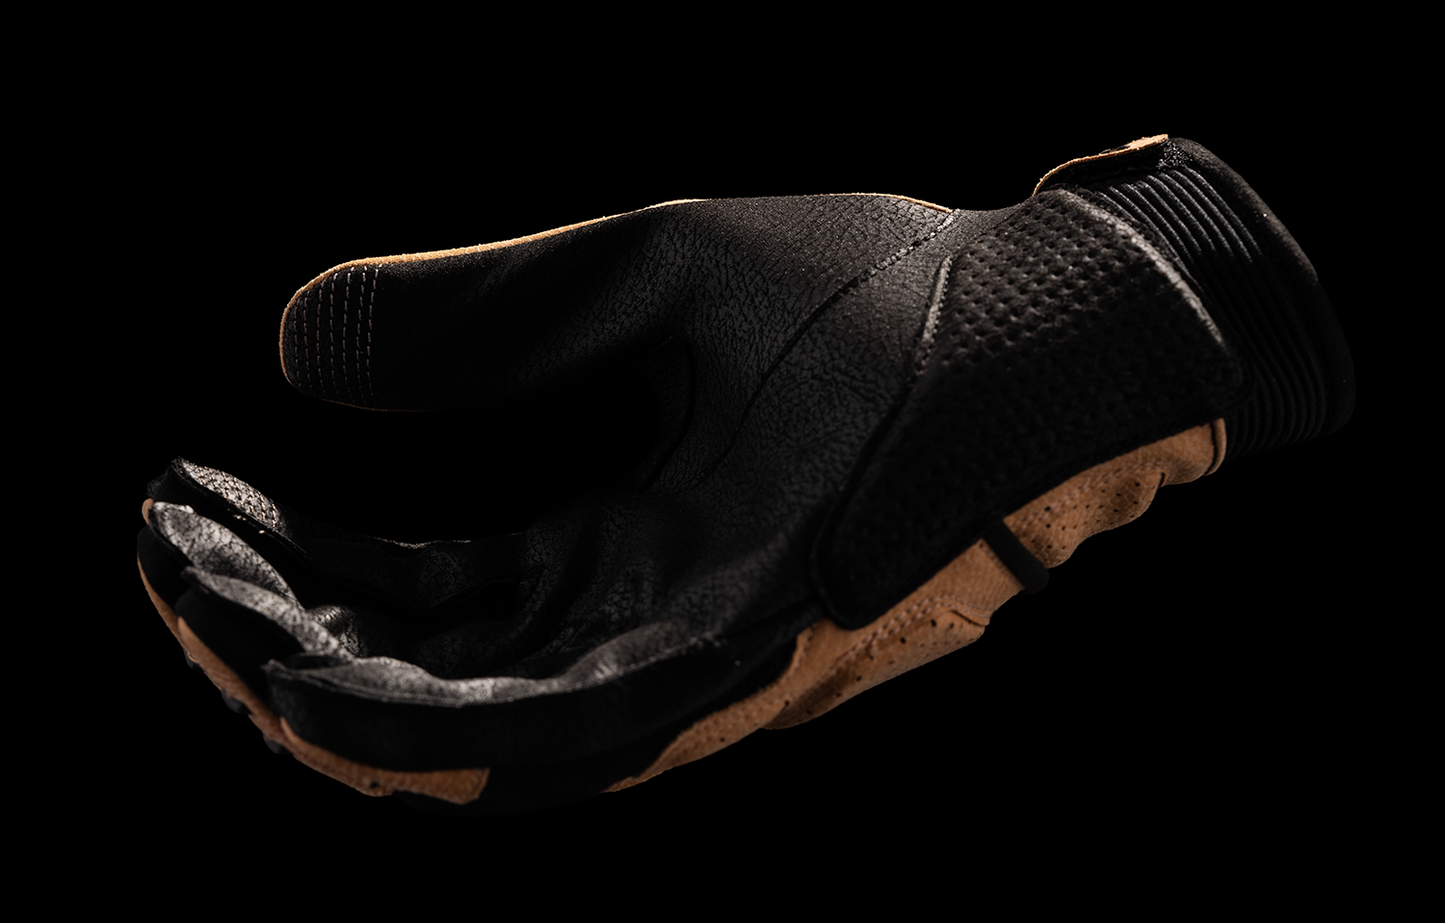 ICON Women's Superduty3™ CE Gloves - Tan - XS 3302-0924